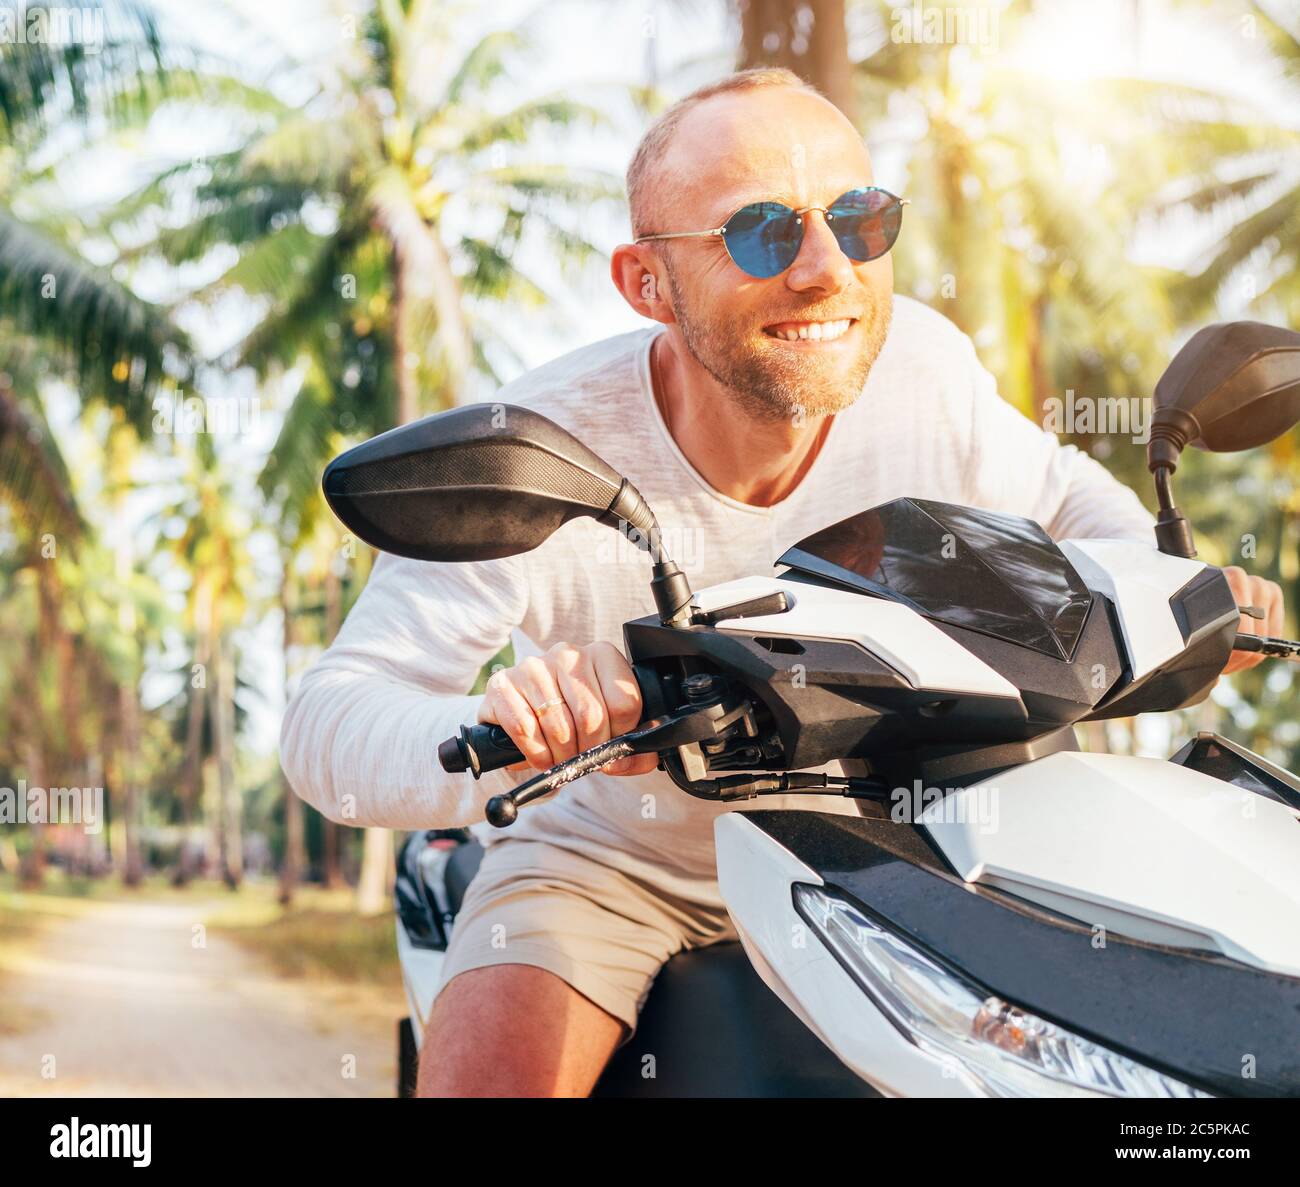 Glücklich lächelnd männlichen Touristen in Sonnenbrille Reiten Motorrad Roller während seines tropischen Urlaubs unter Palmen. Stockfoto